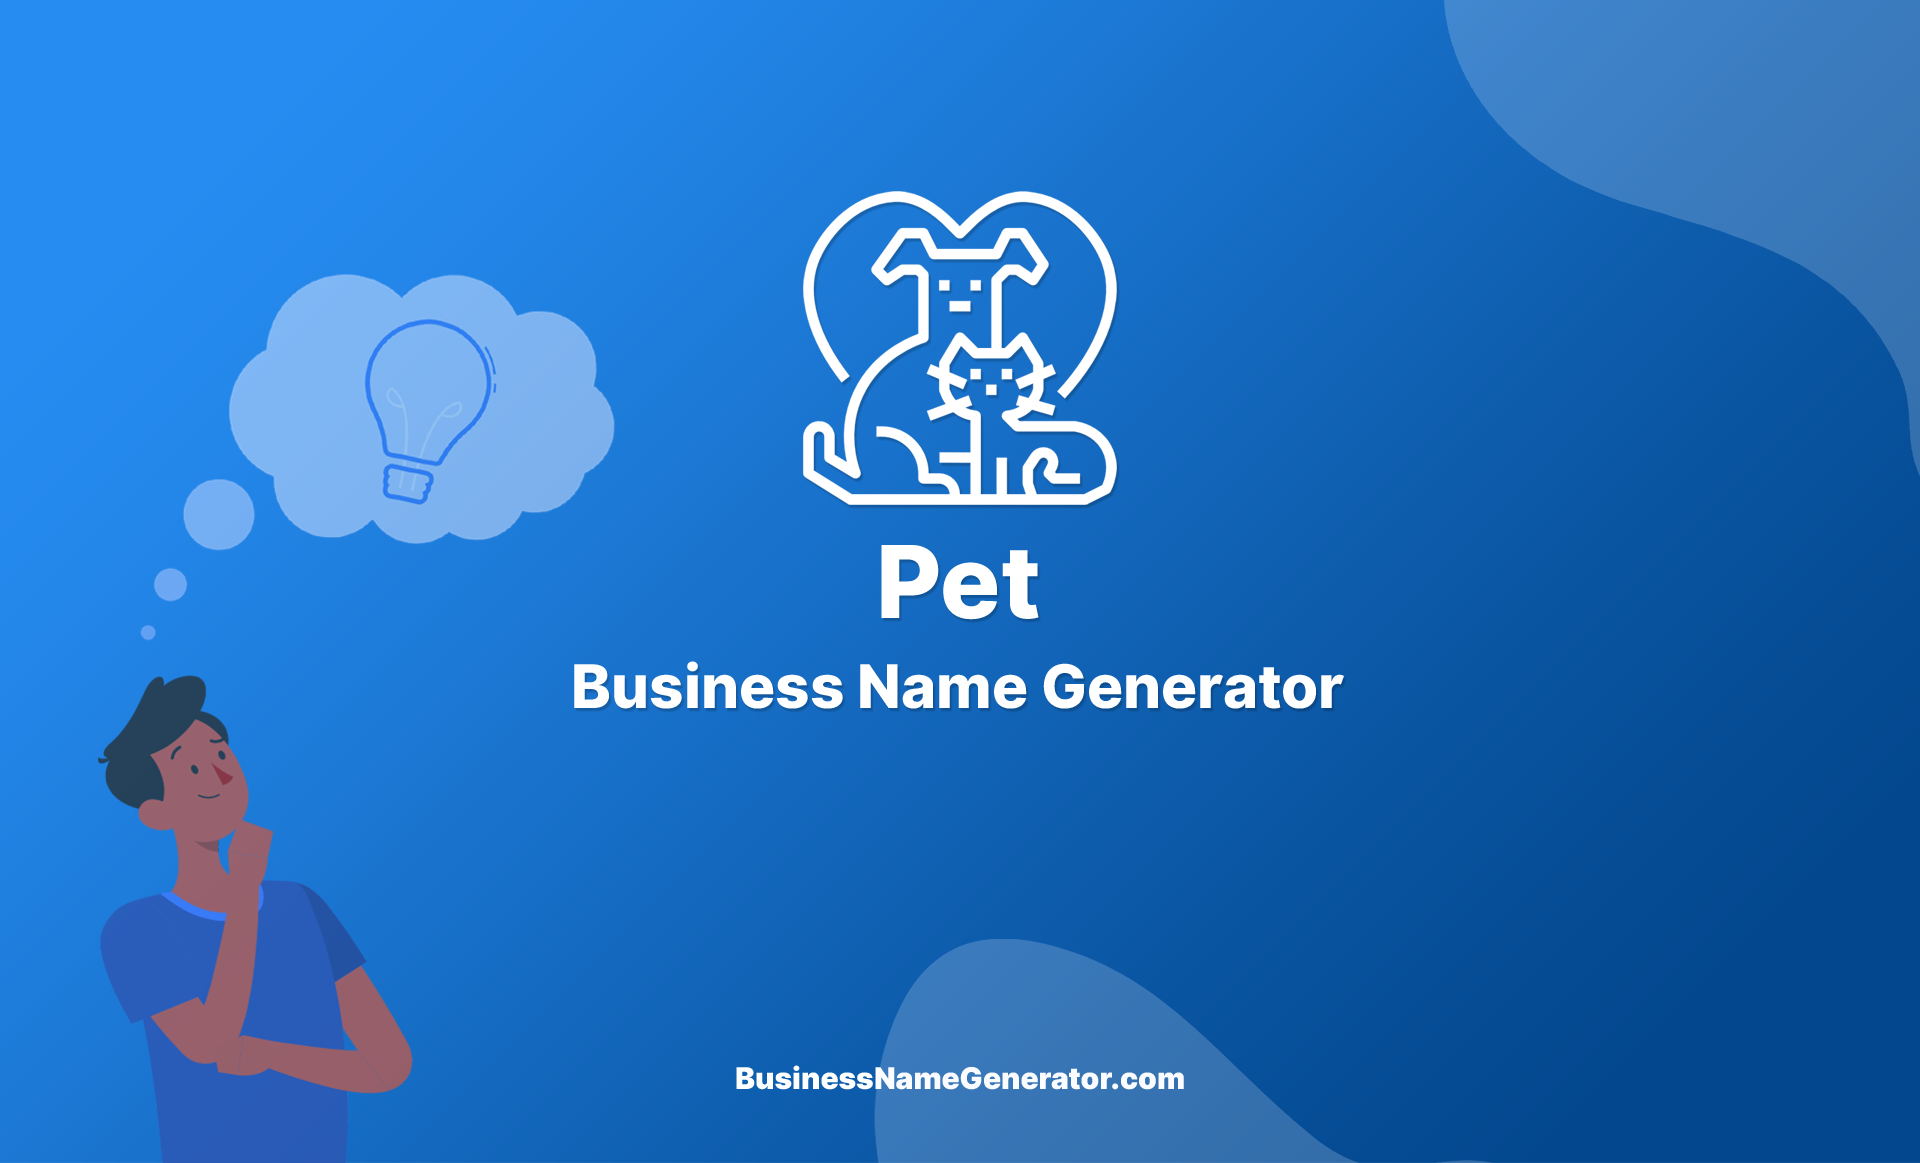 Pet Business Name Generator